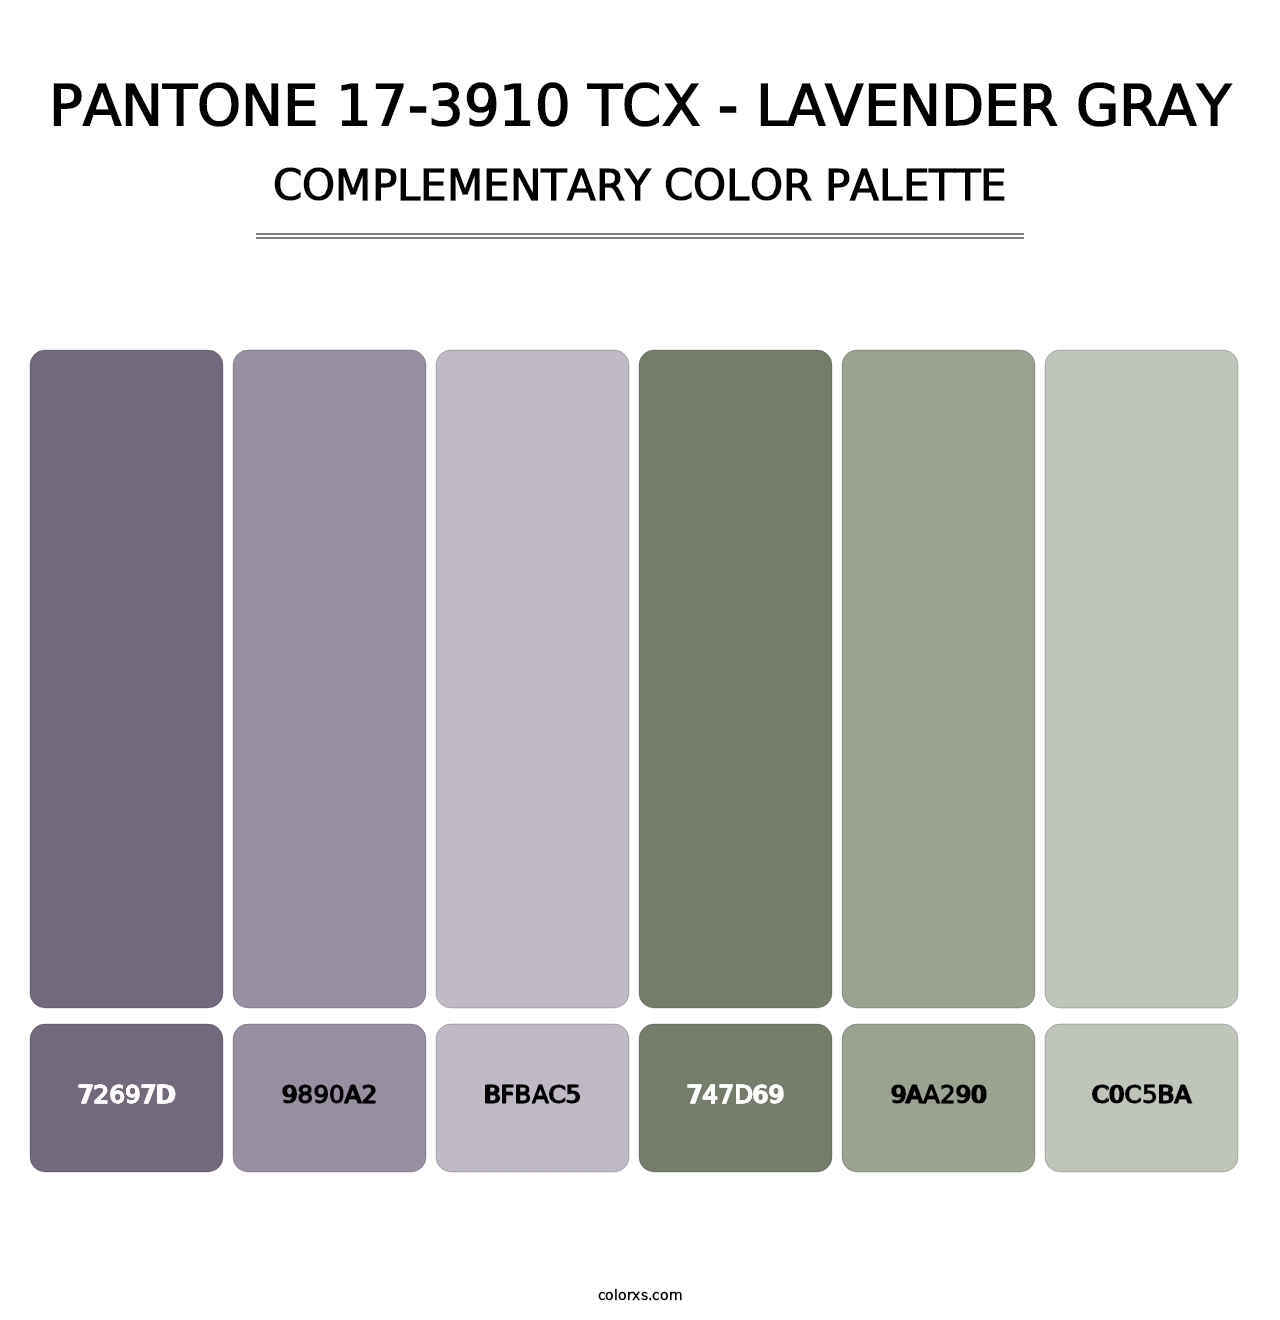 PANTONE 17-3910 TCX - Lavender Gray - Complementary Color Palette